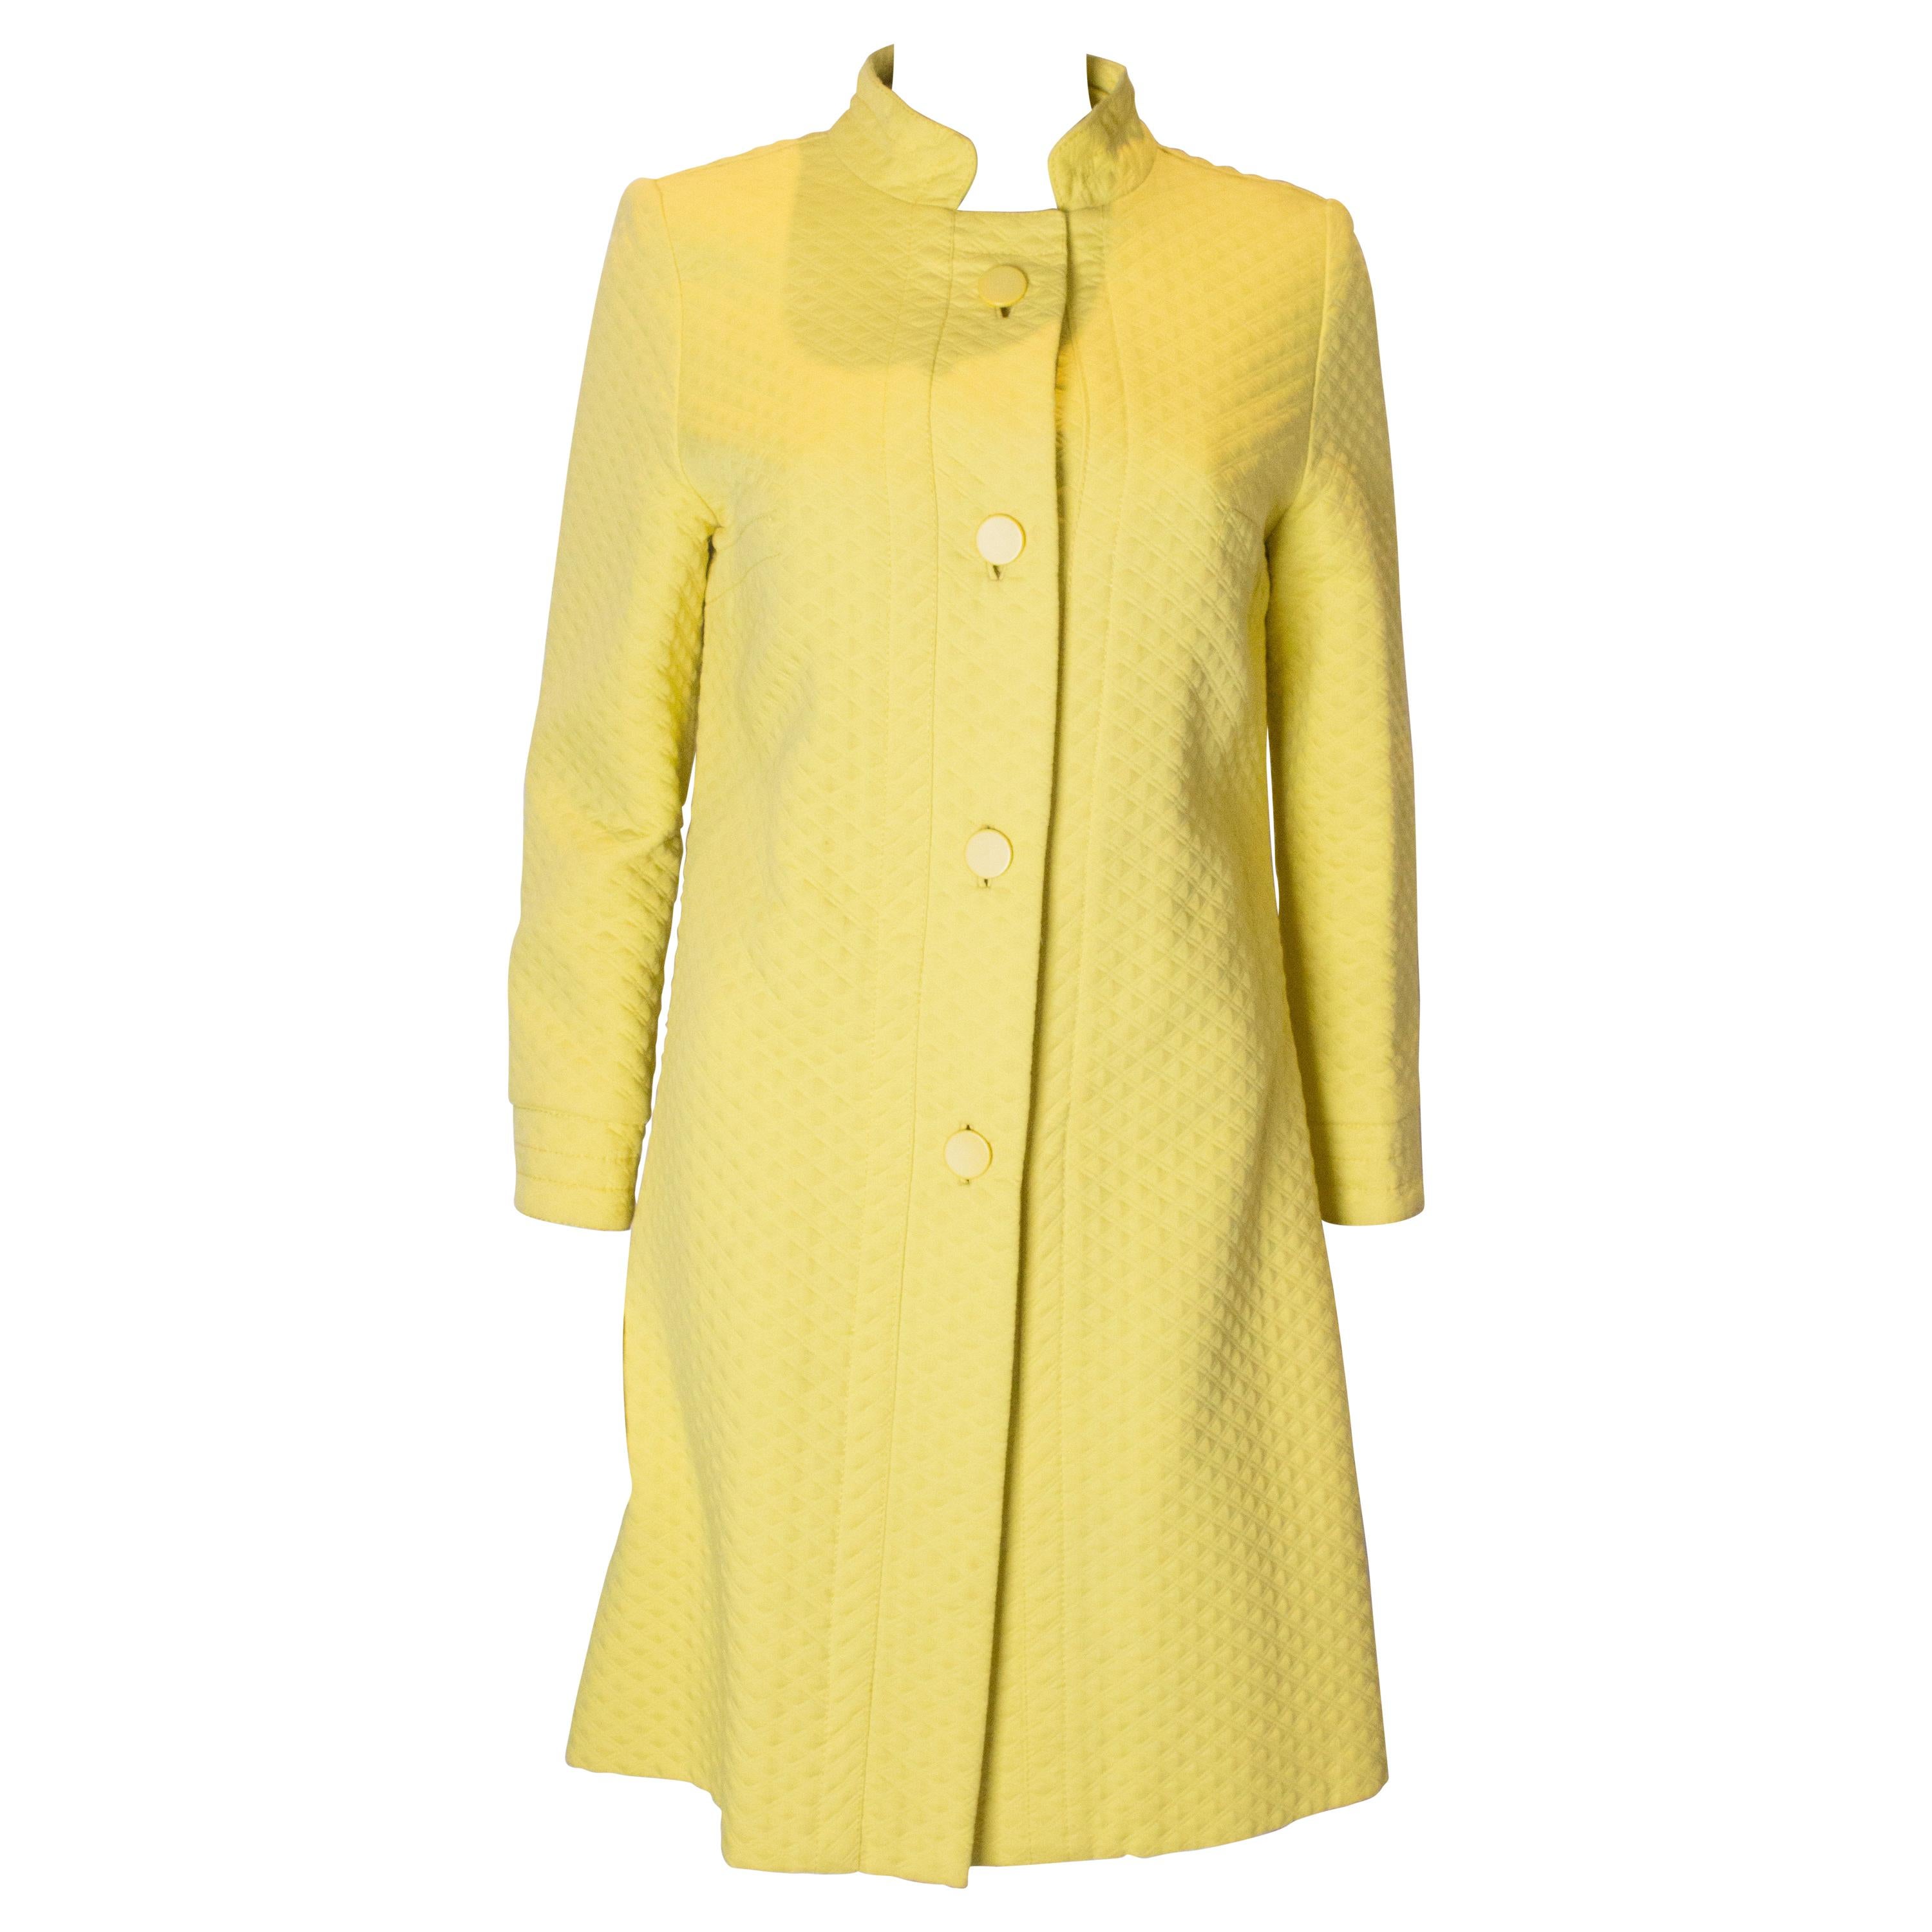 Chic Vintage Yellow Coat